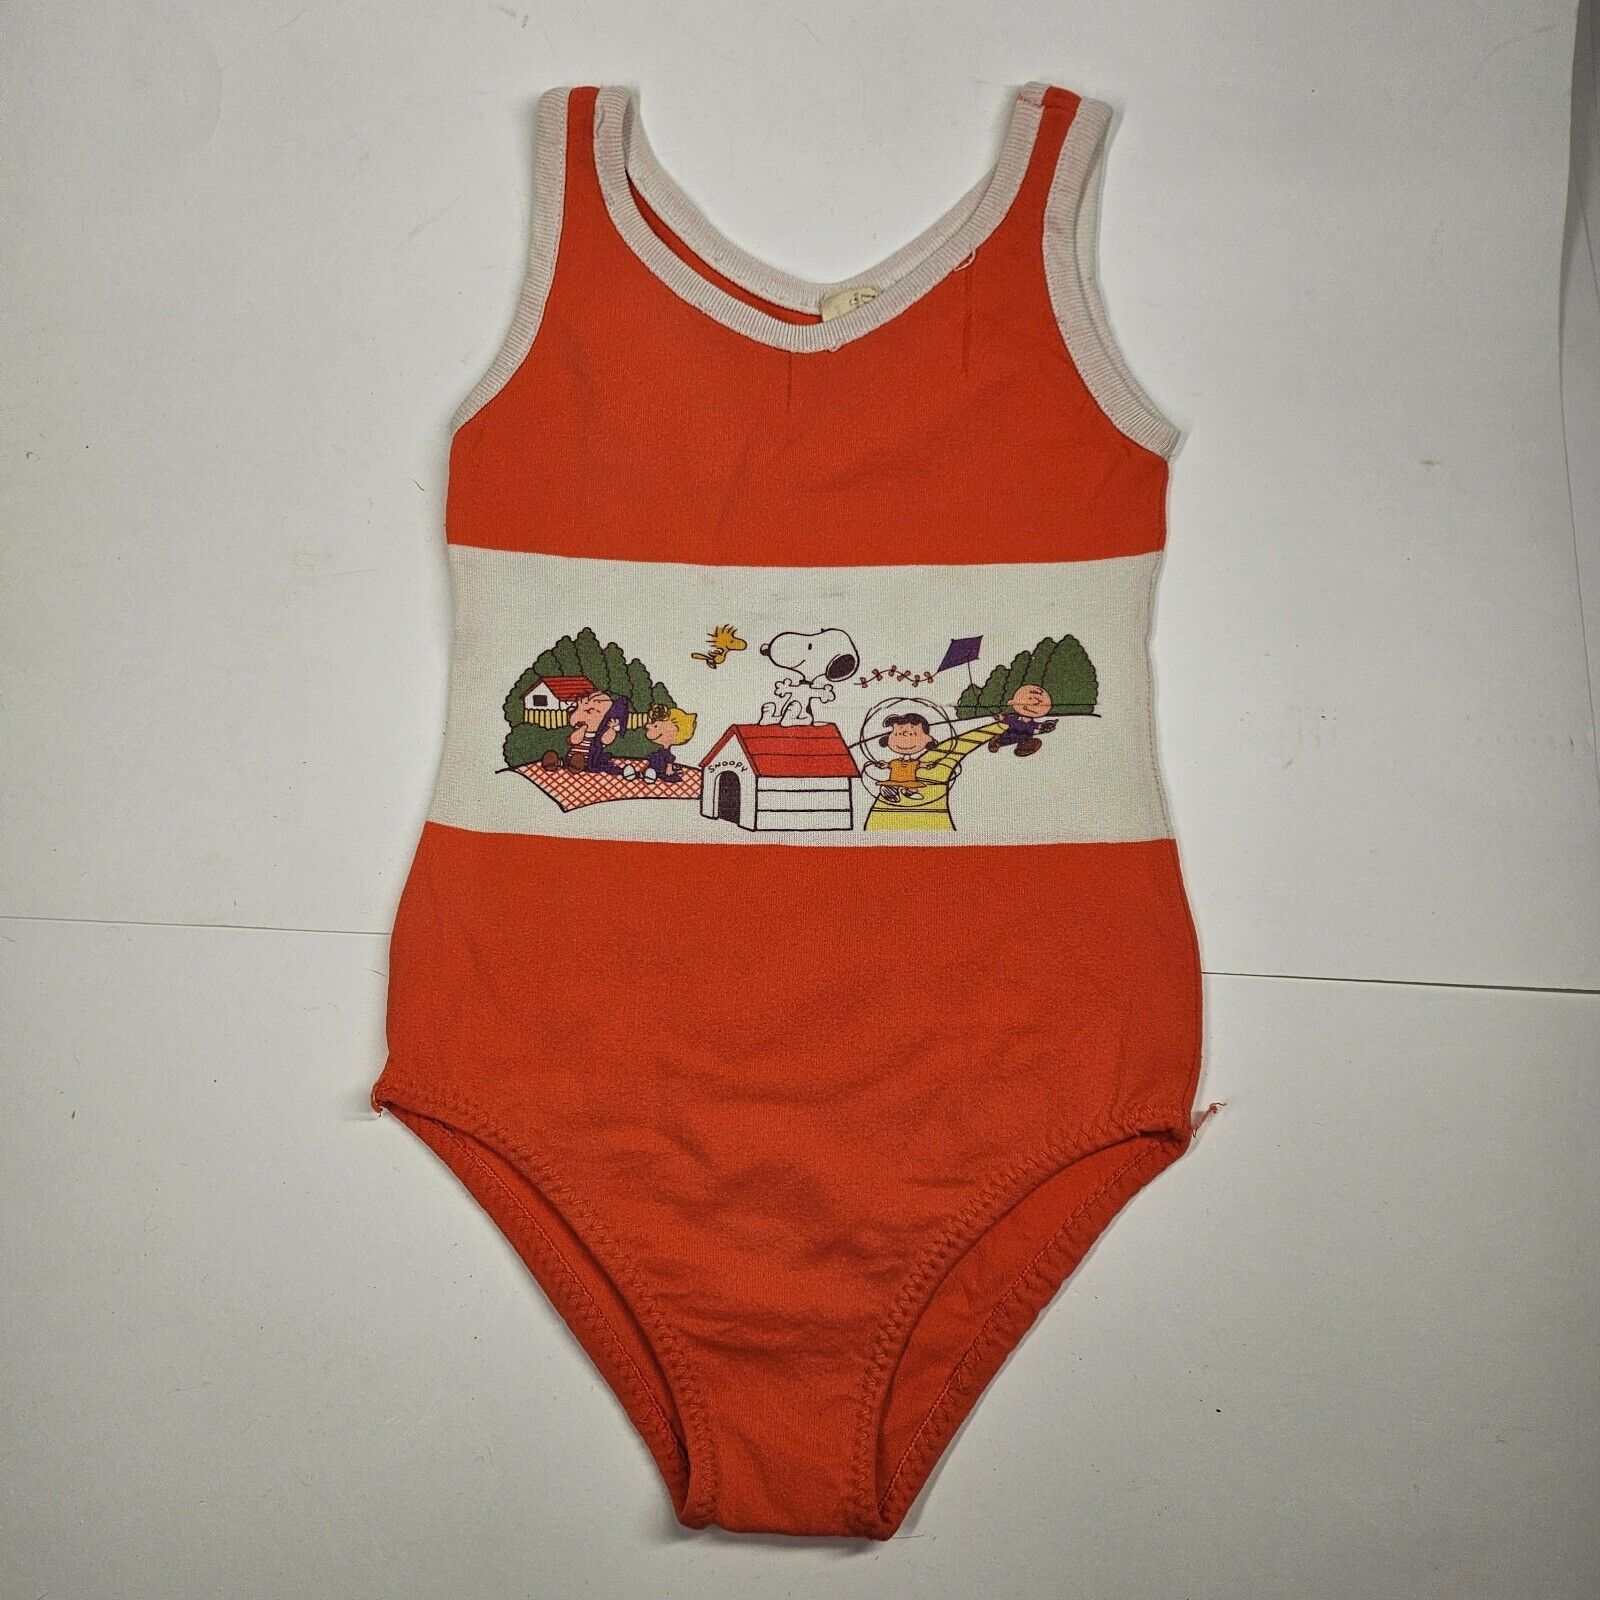 Vintage Peanuts Snoopy Kids’ Swimsuit 2T-4T Orange Danskin